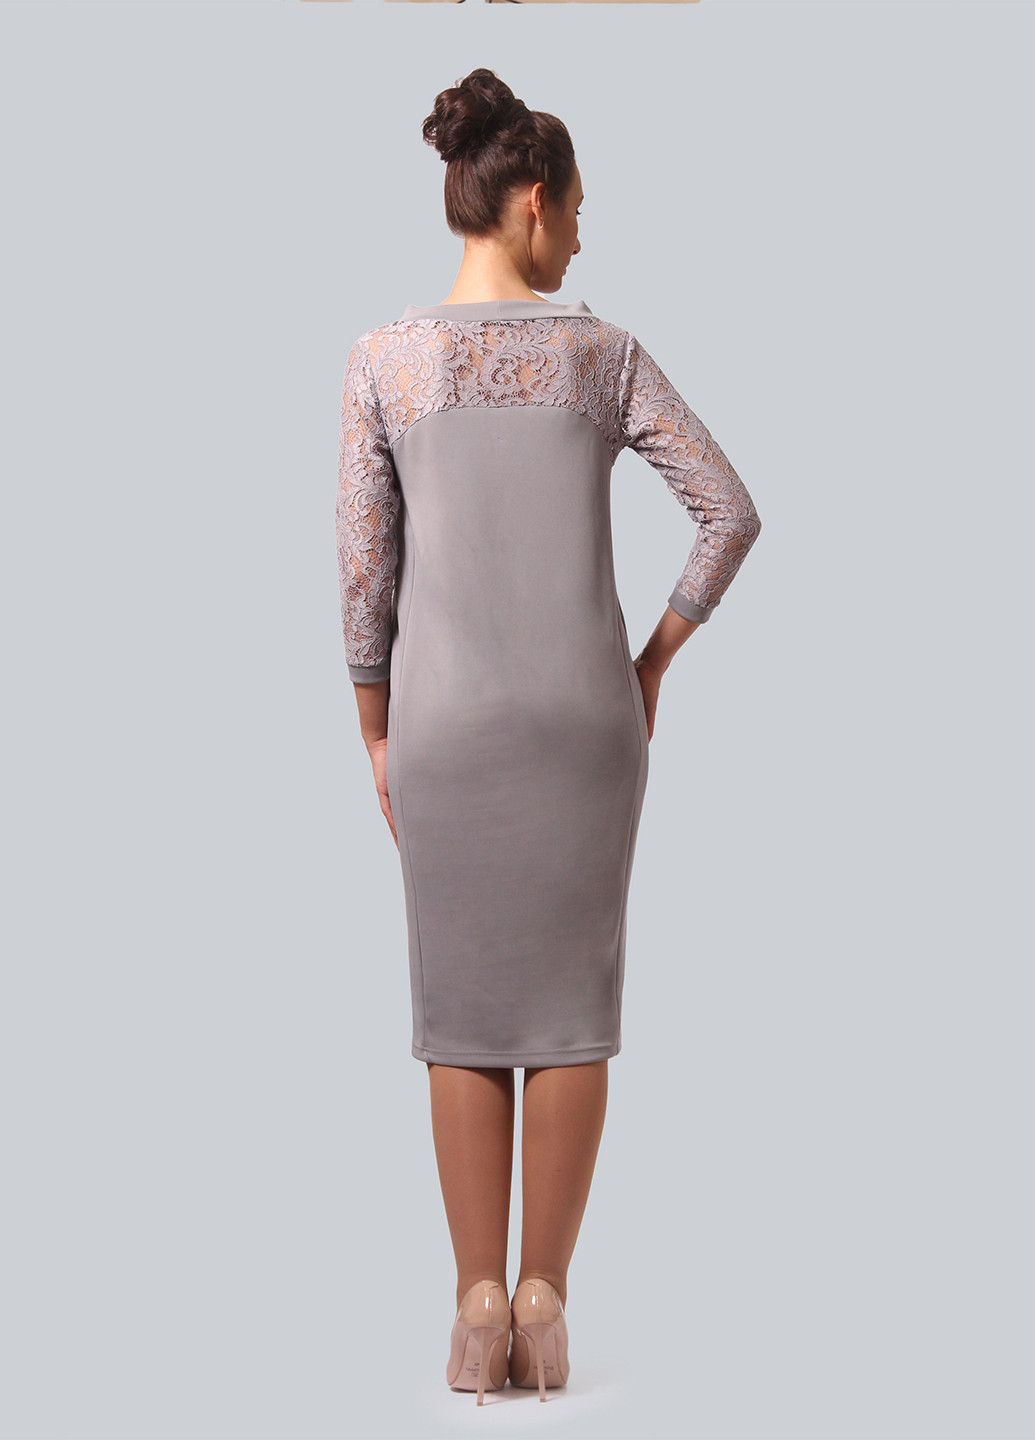 Светло-серое коктейльное платье Alika Kruss однотонное